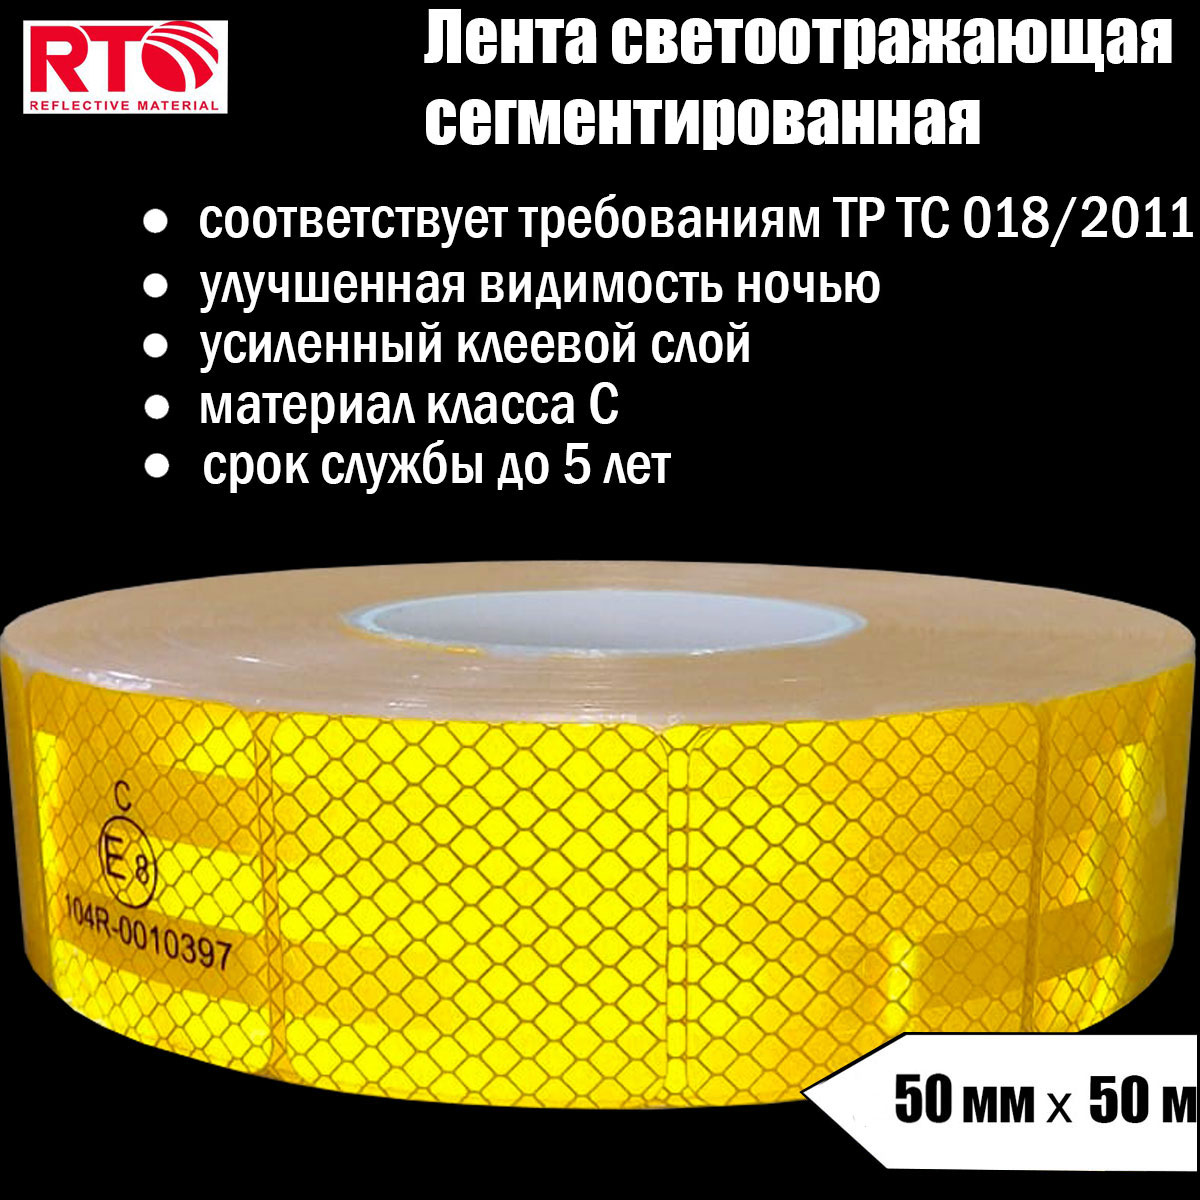 Лента светоотражающая сегментированная RTLITE RT-V104 для контурной маркировки, 50мм х 50м светоотражающая термонаклейка